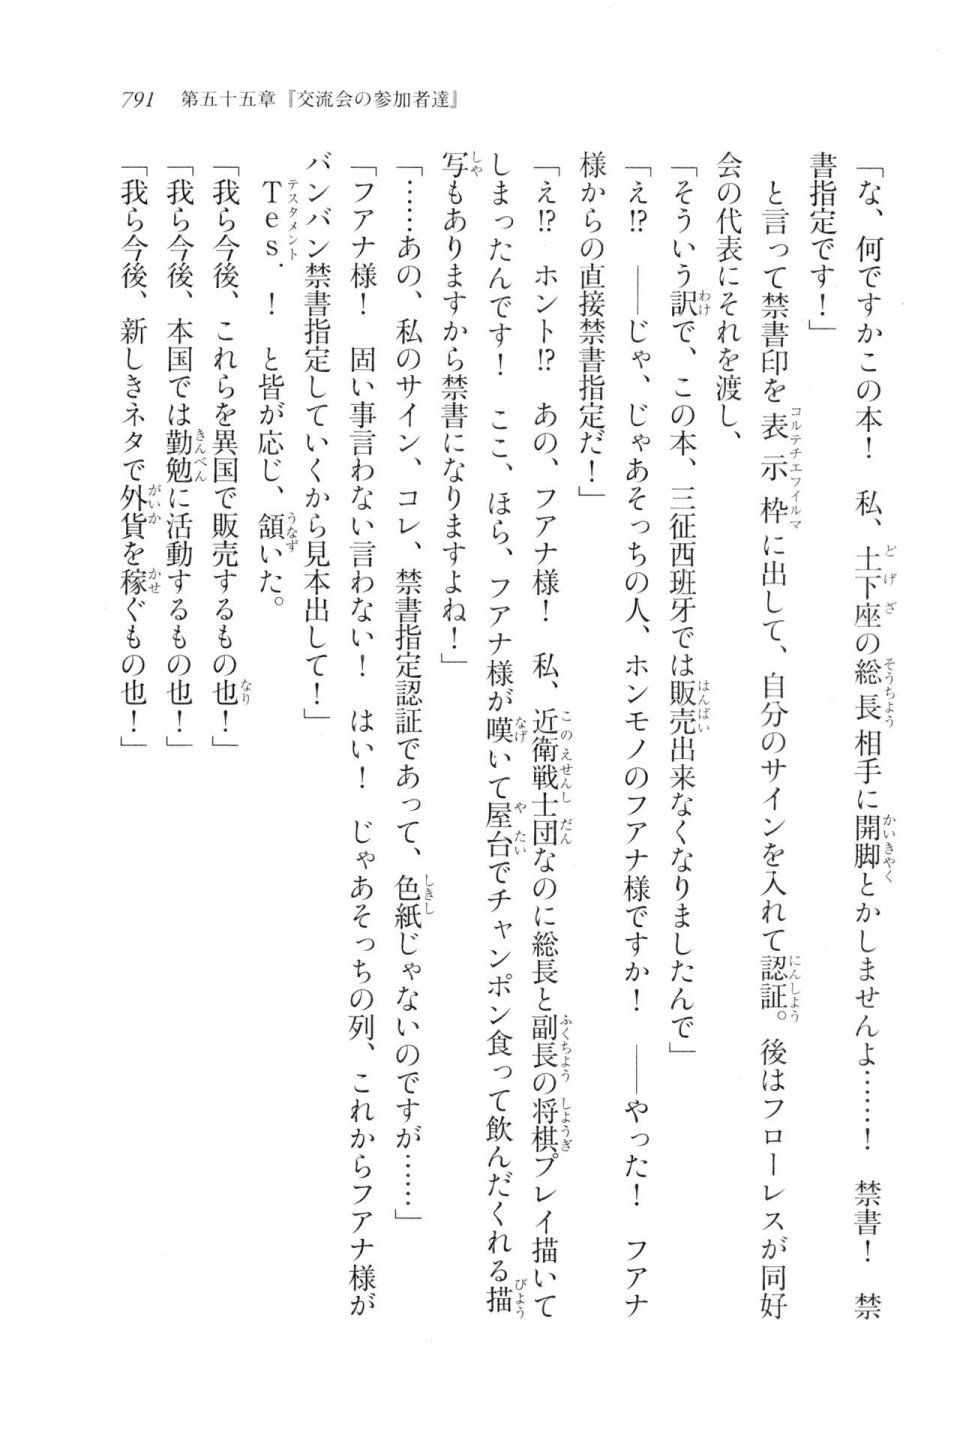 Kyoukai Senjou no Horizon LN Vol 20(8B) - Photo #791